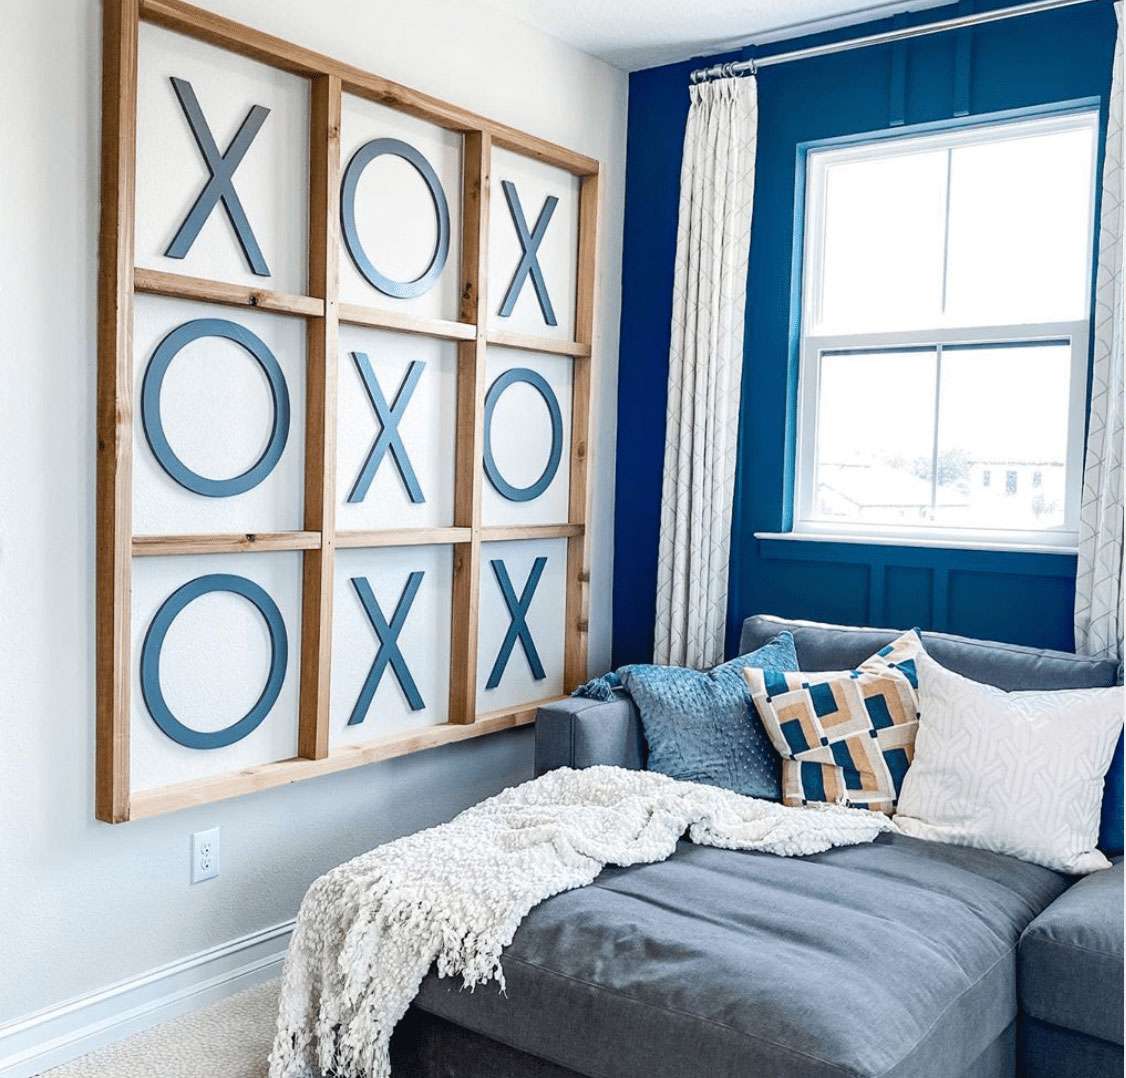 Sala de estar com parede azul-marinho